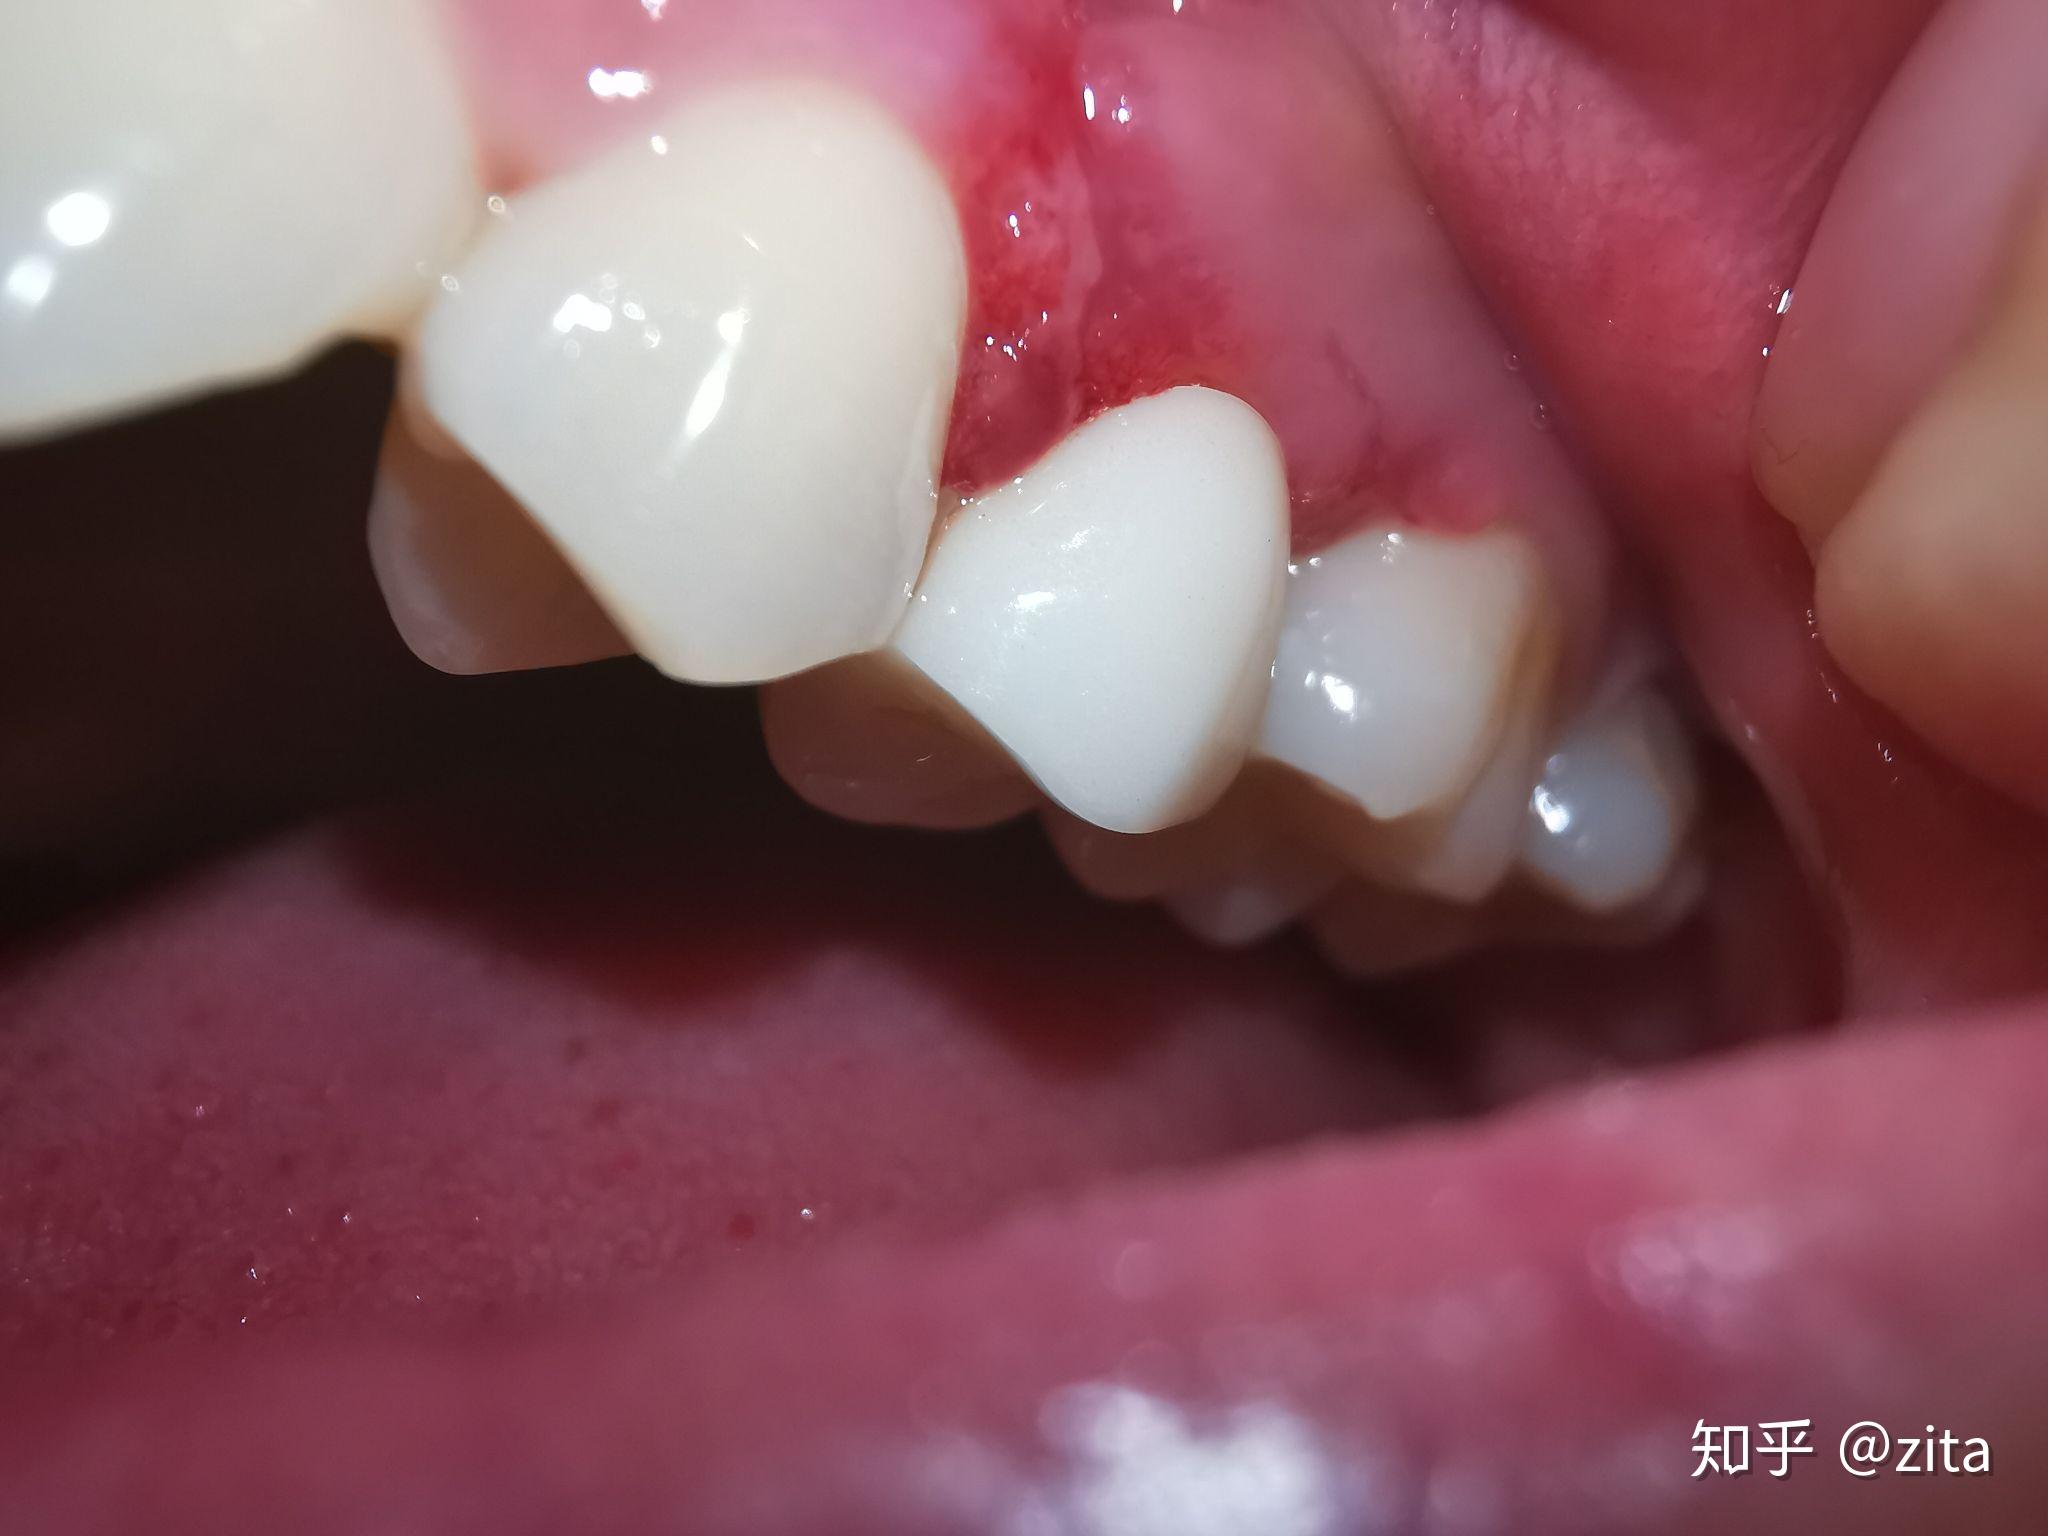 牙周病综合症牙周病治疗后牙龈恢复健康的颜色和形态_图片_互动百科